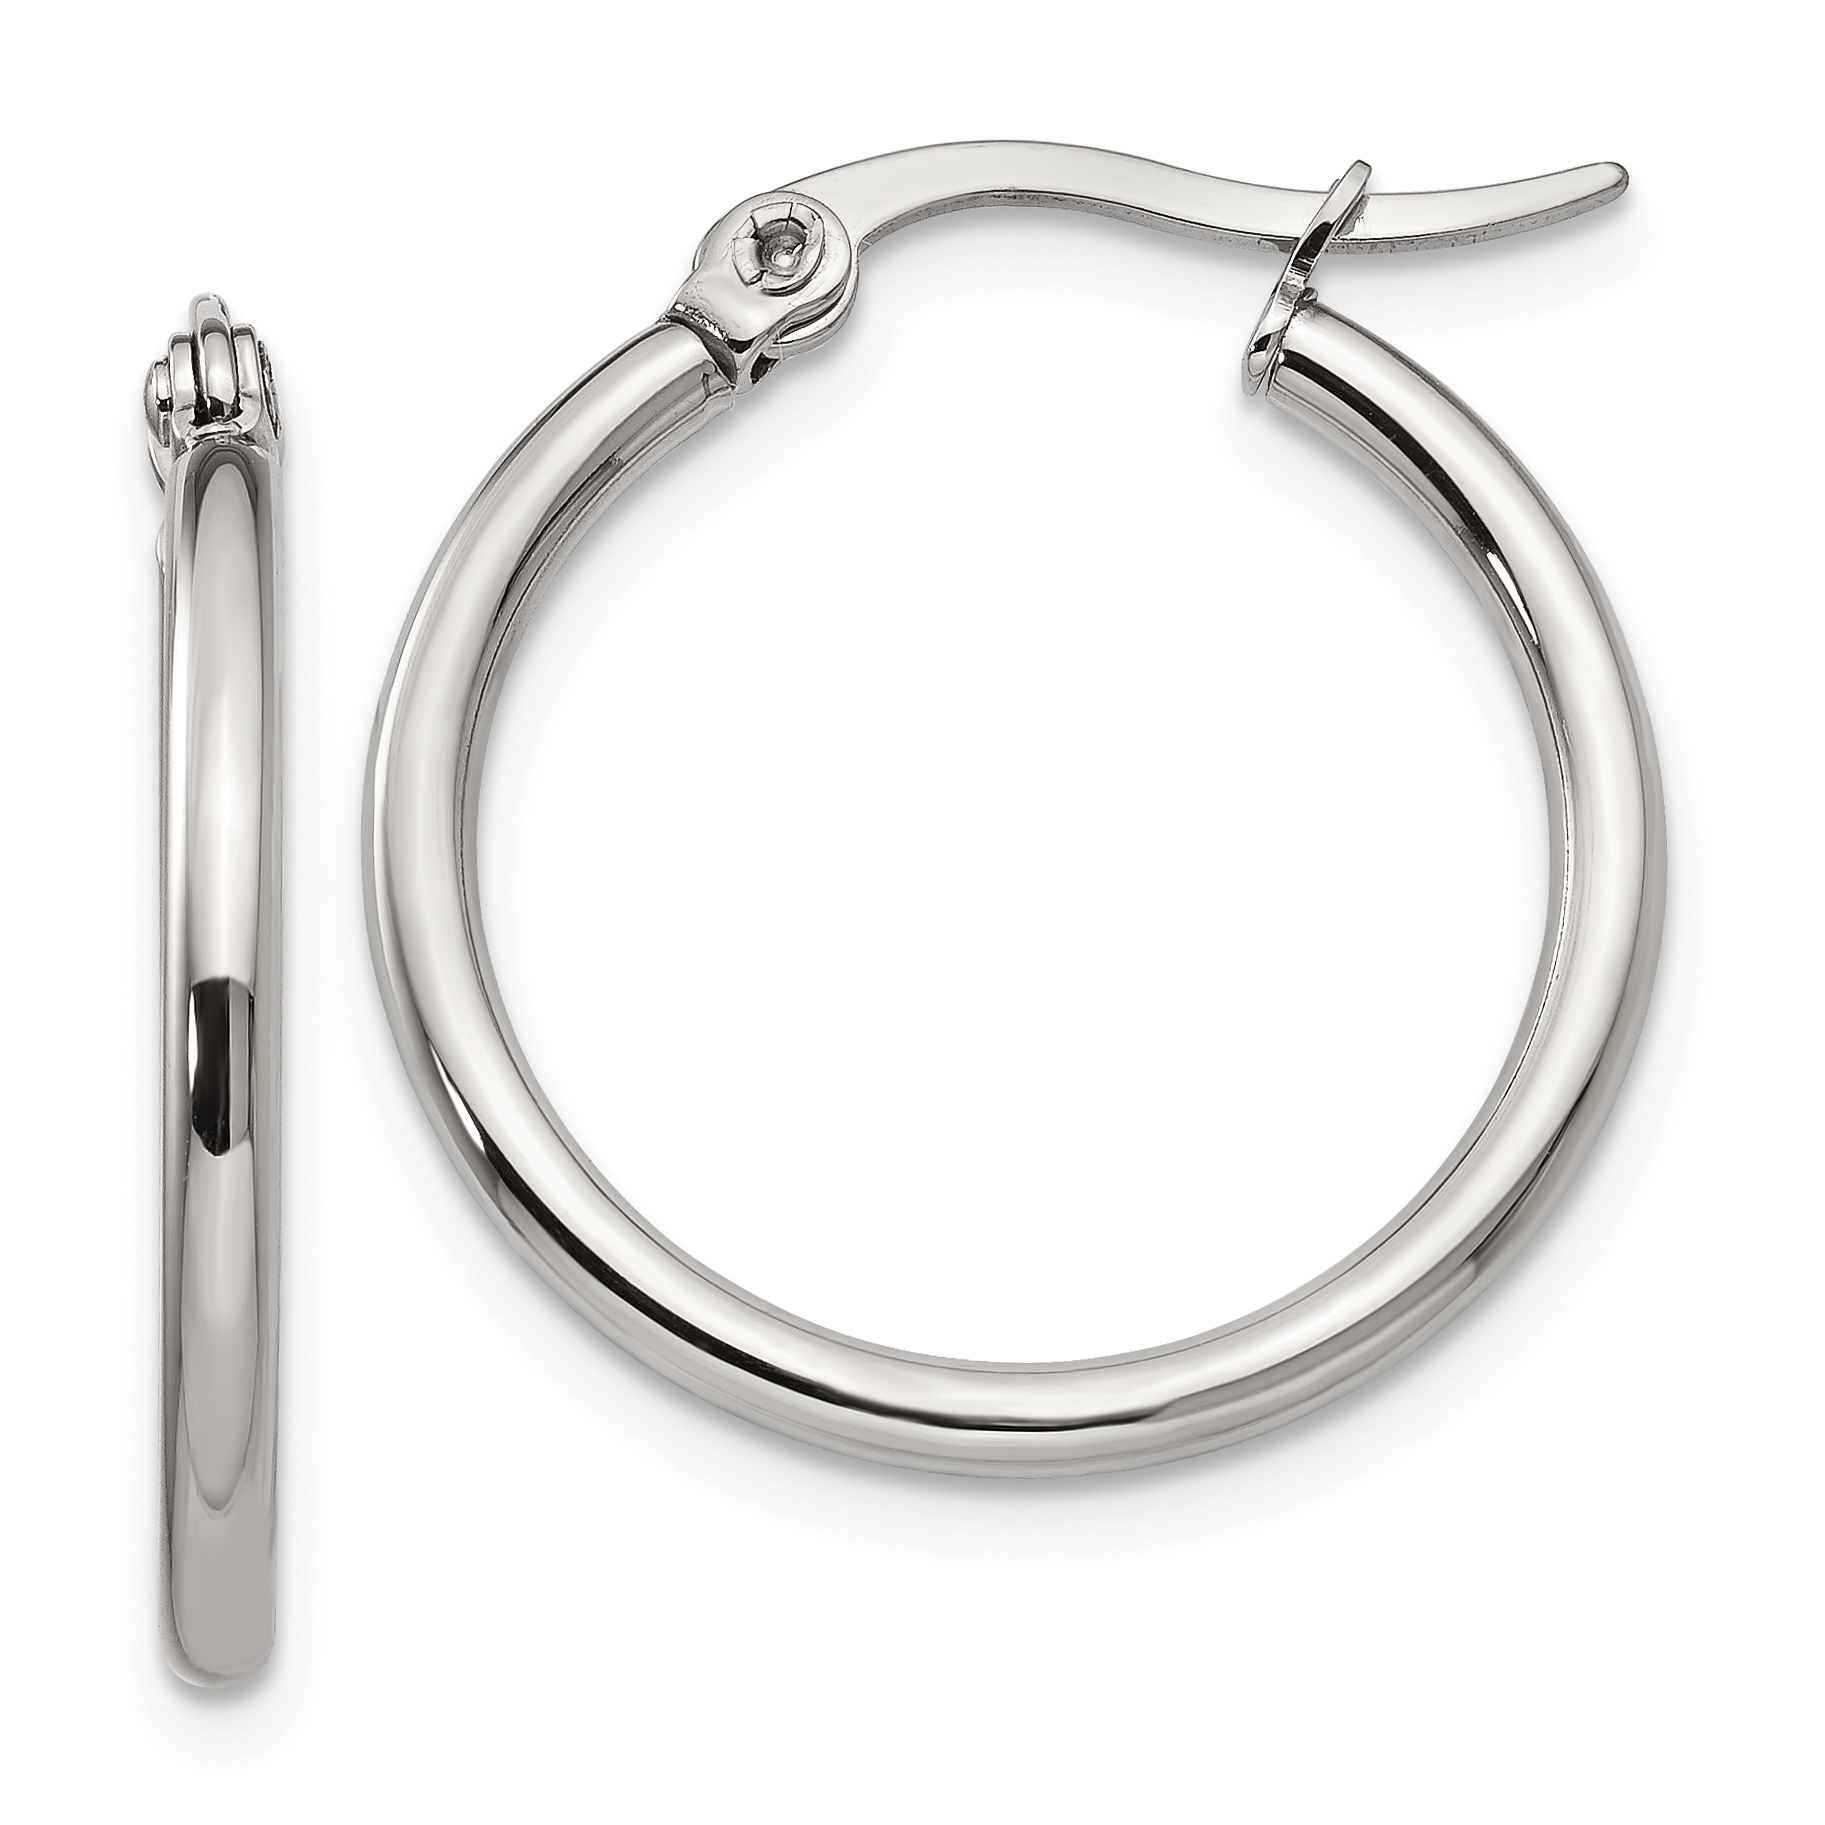 Stainless Steel 22mm Diameter Hoop Earrings SRE113 | eBay